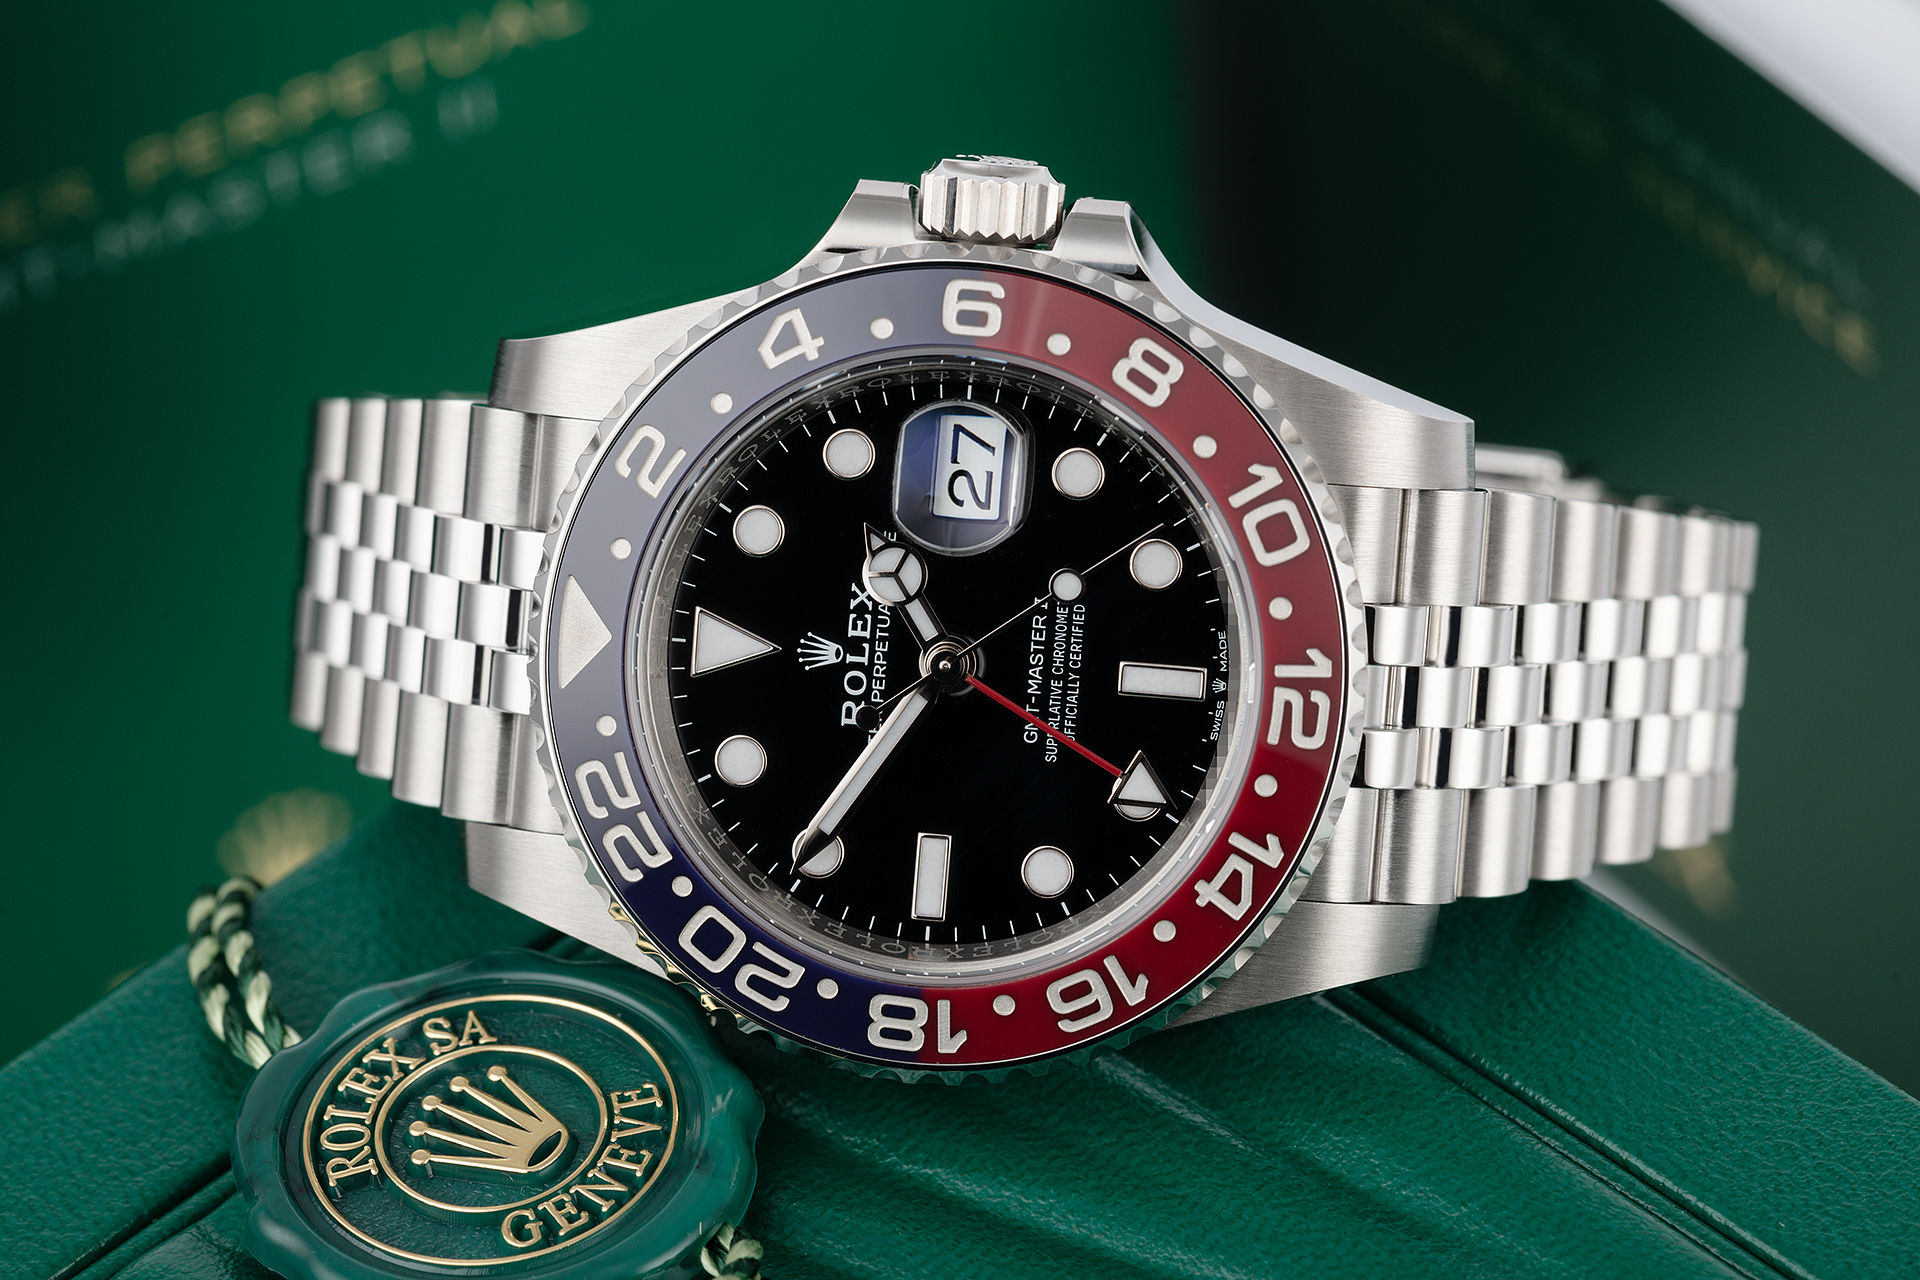 ref 126710BLRO | Brand New '5 Year Warranty' | Rolex GMT-Master II